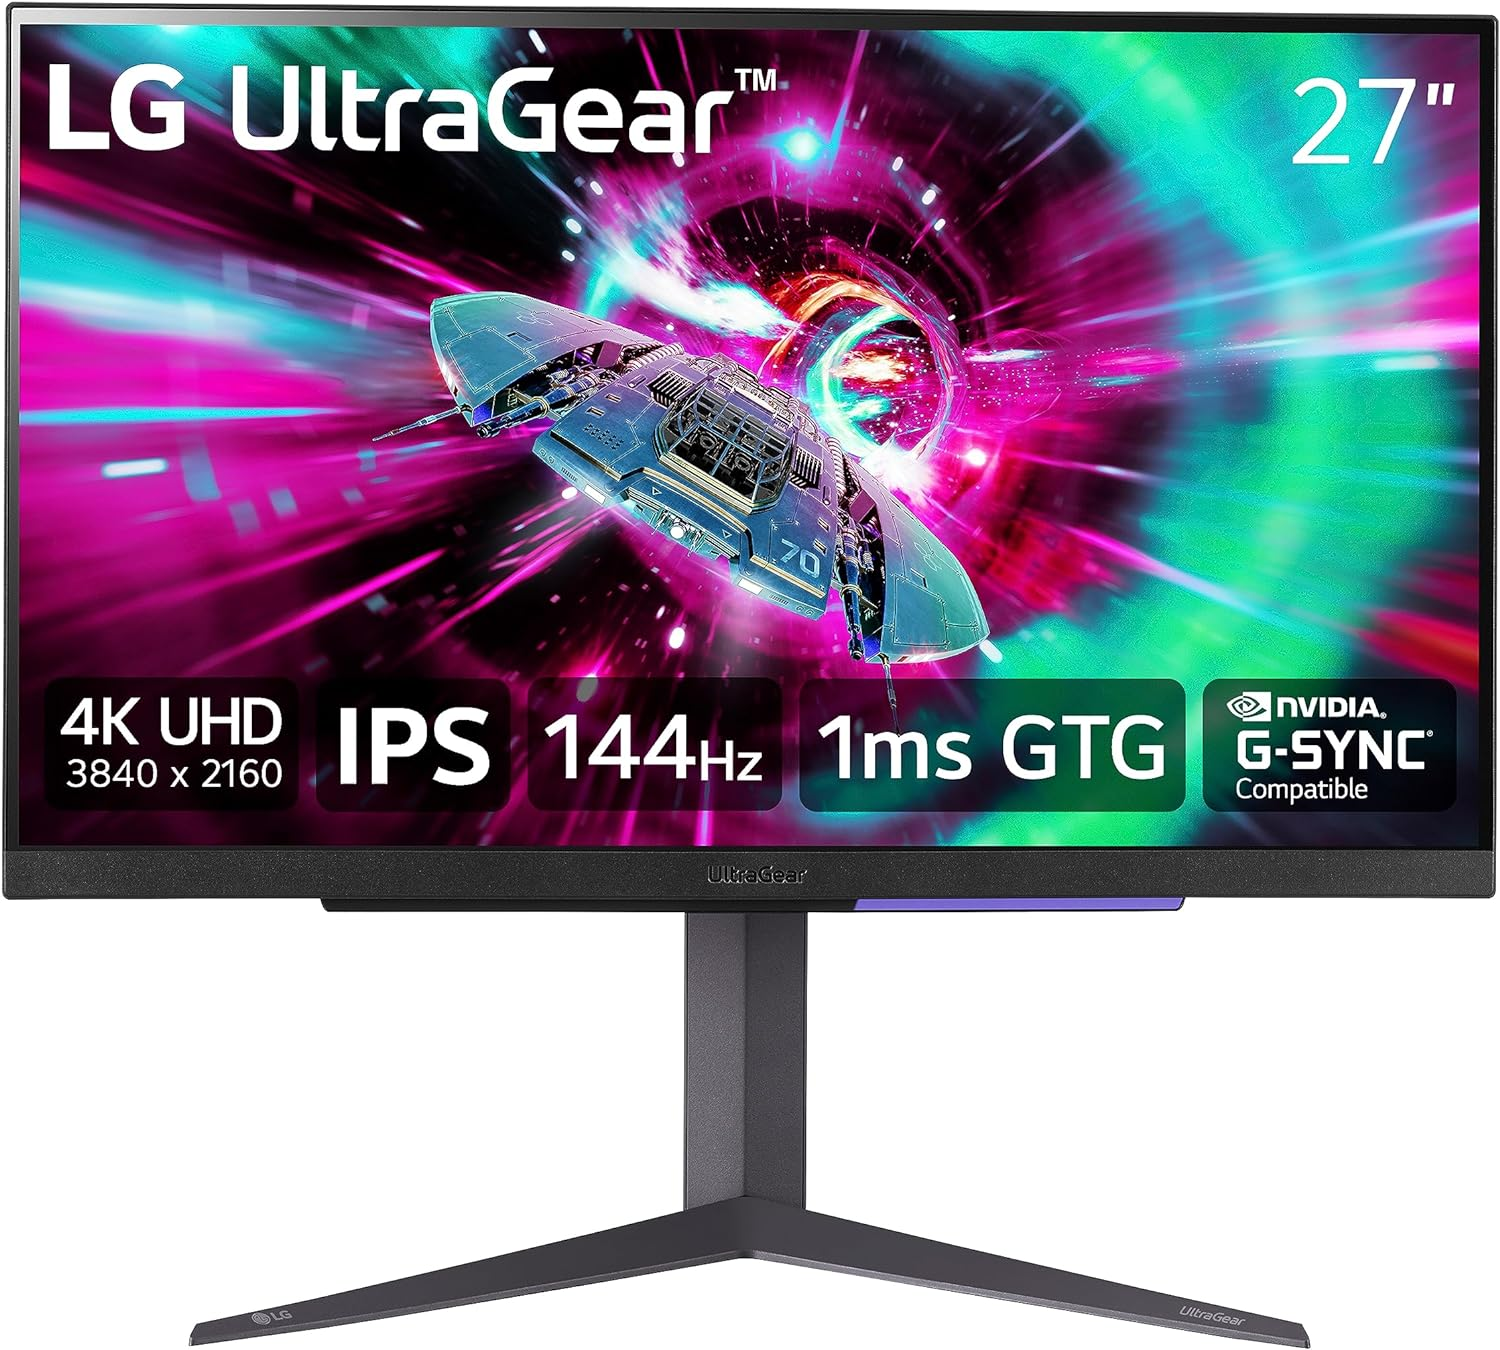 Gaming Monitor Deals - LG 27" Ultragear 4K UHD (3840x2160) Gaming Monitor